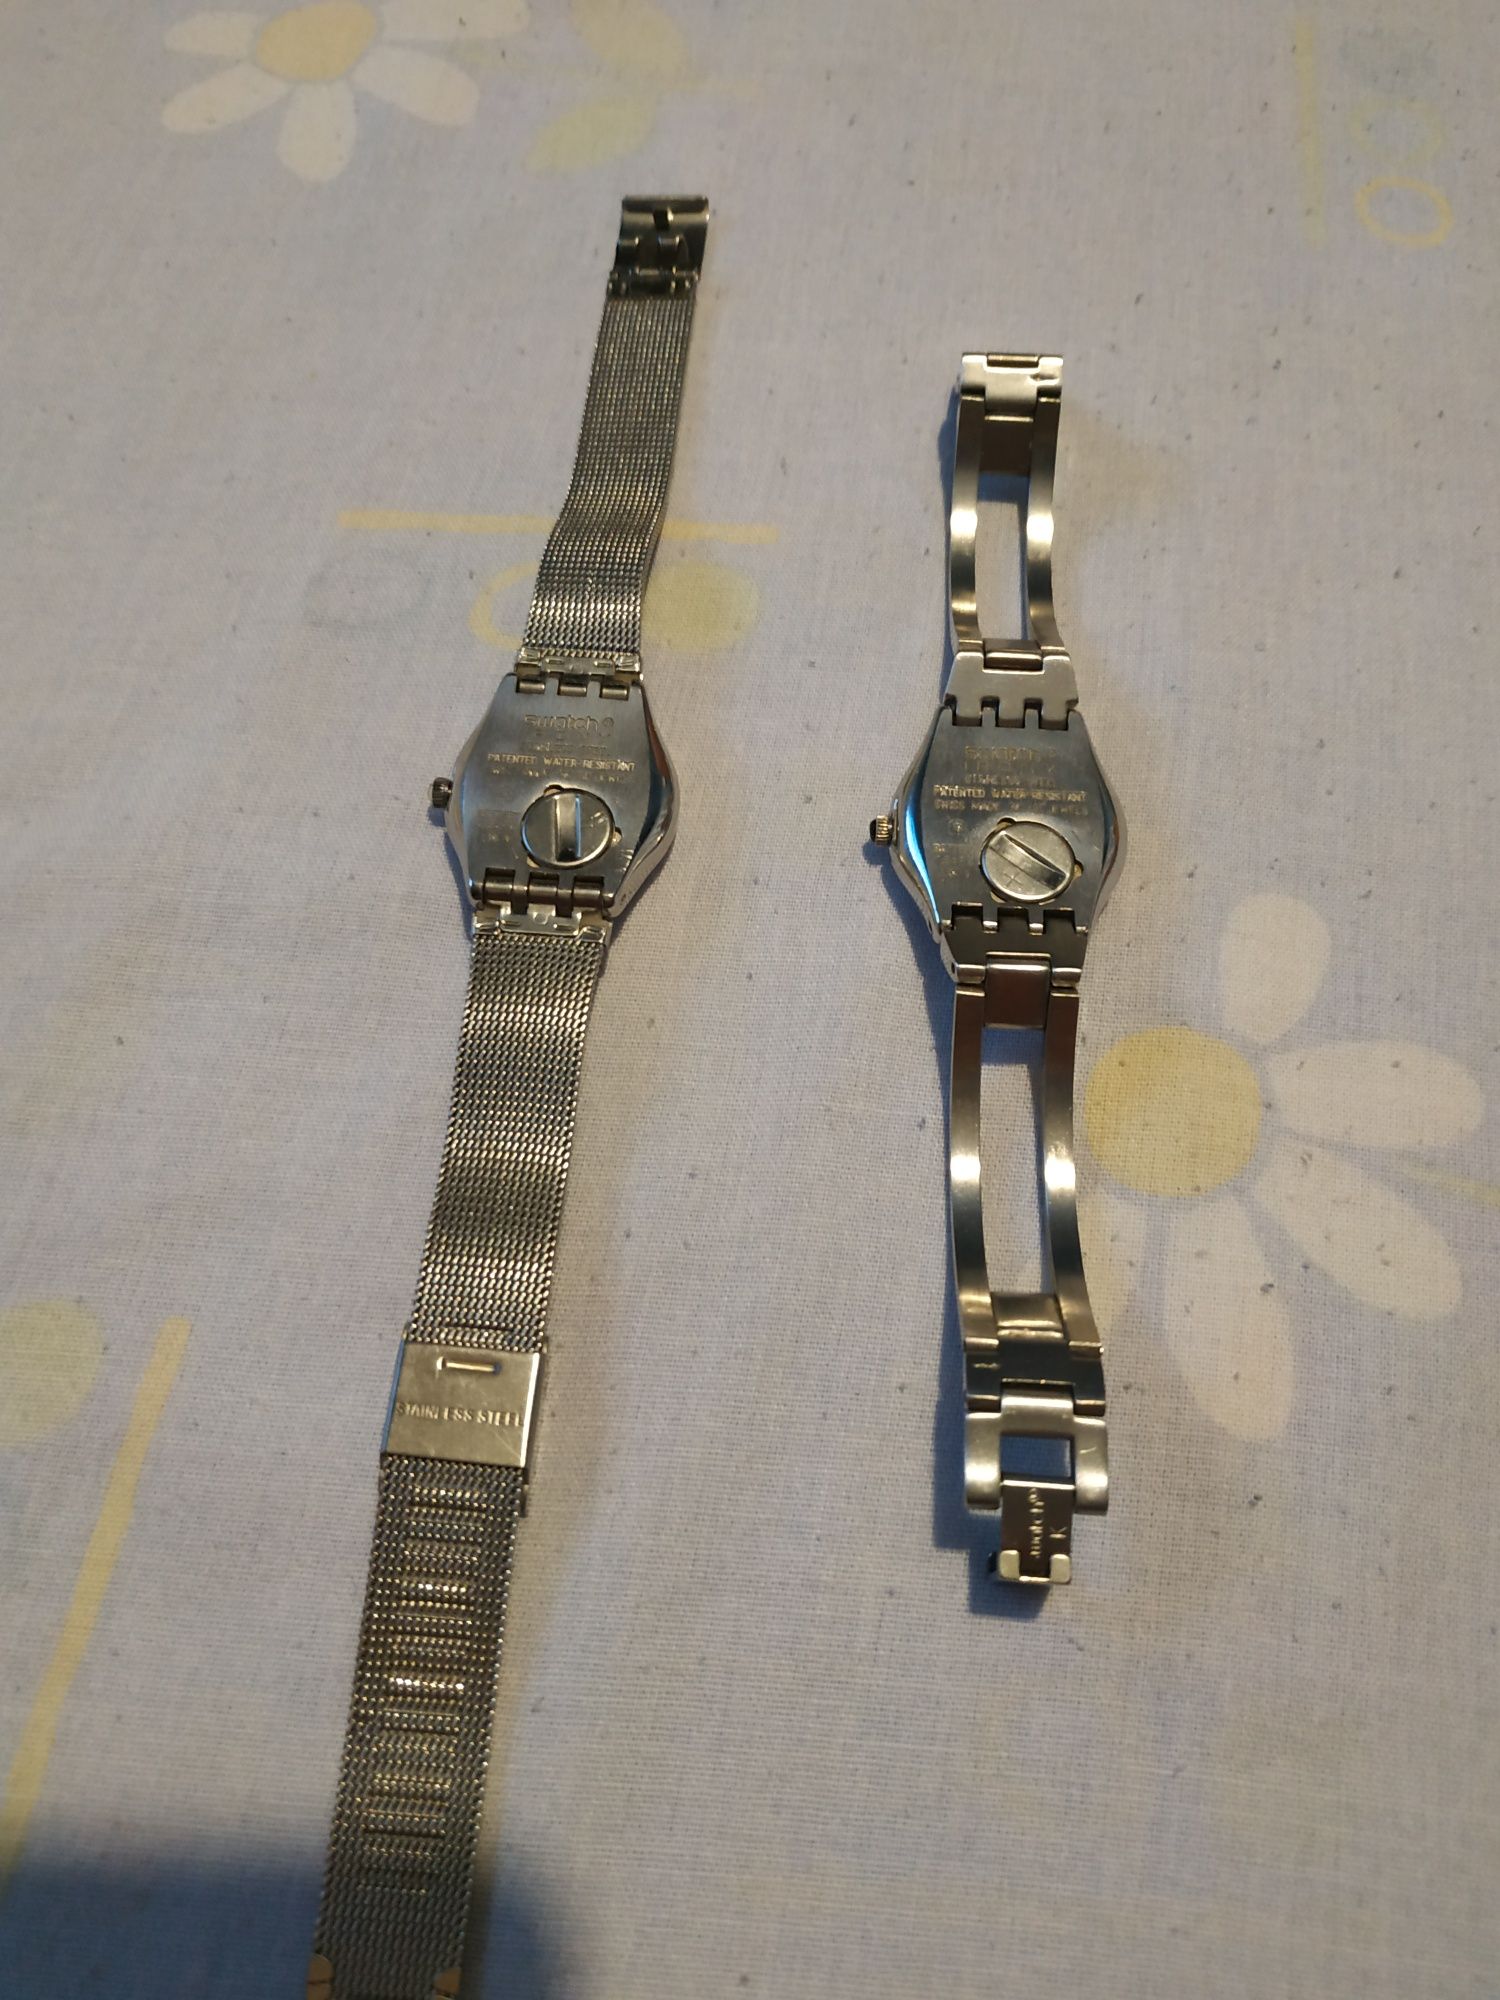 Relógios Swatch e Festina originais